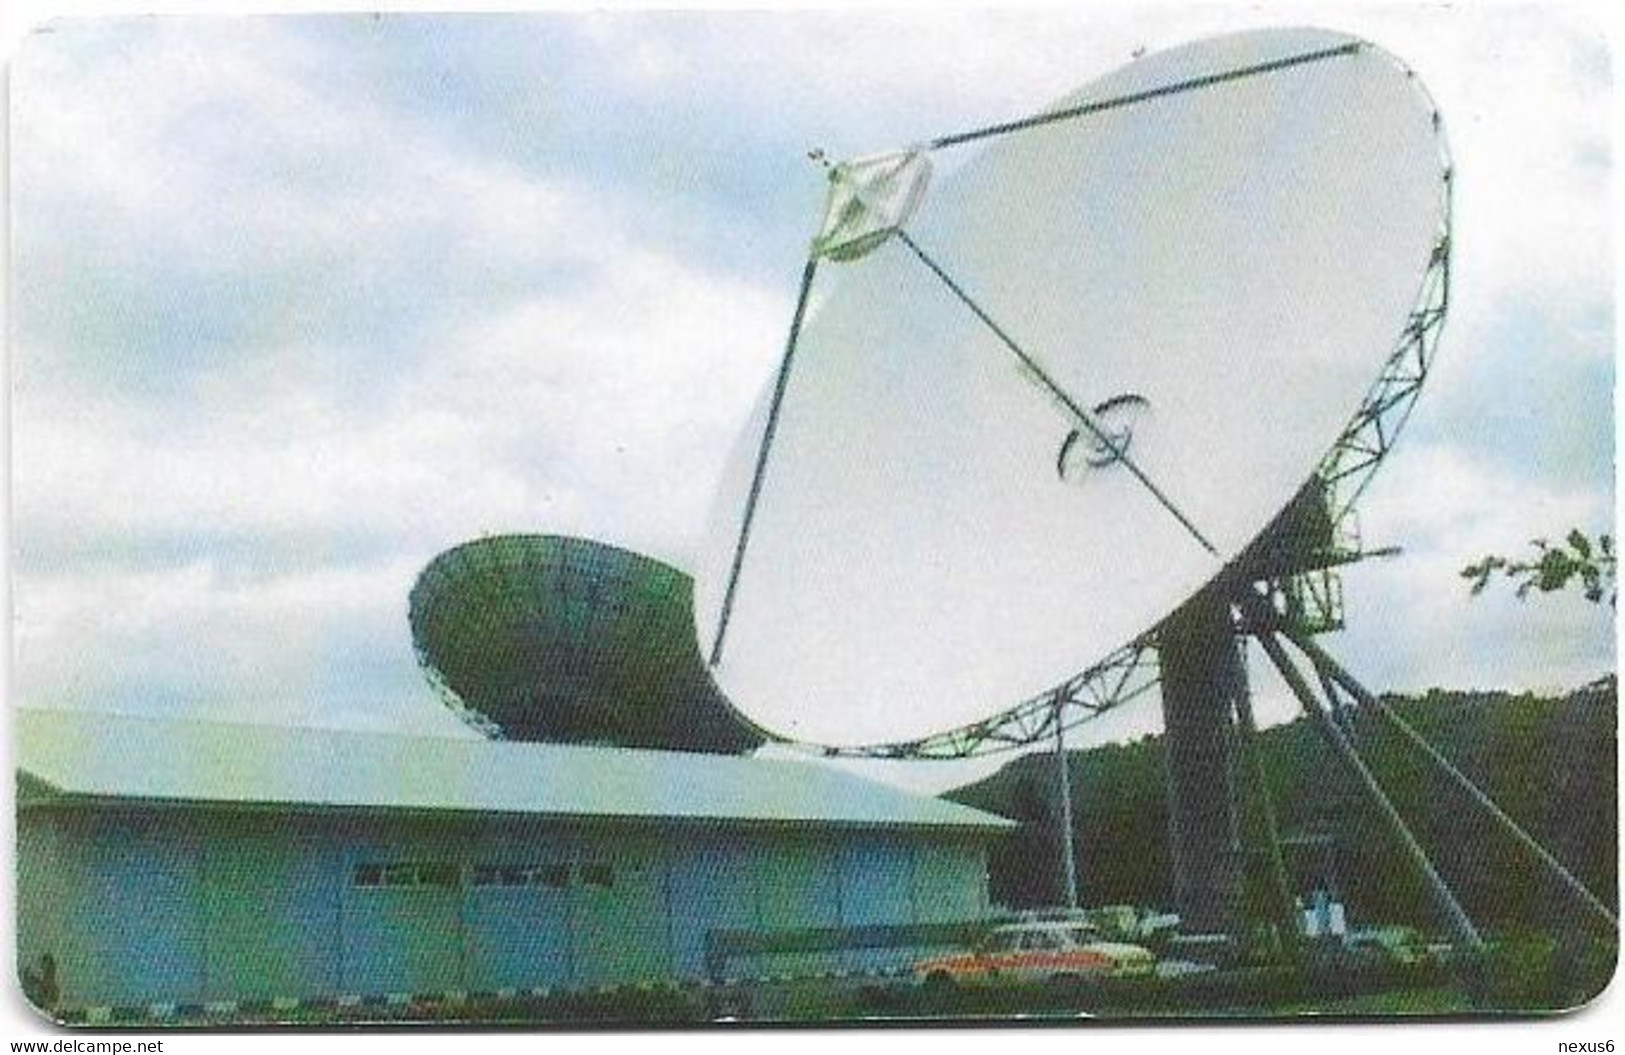 Nigeria - Nitel LTD - Earth Station, Cn. ECAS Dashed Ø - Chip CHT09, 200Units, Used - Nigeria